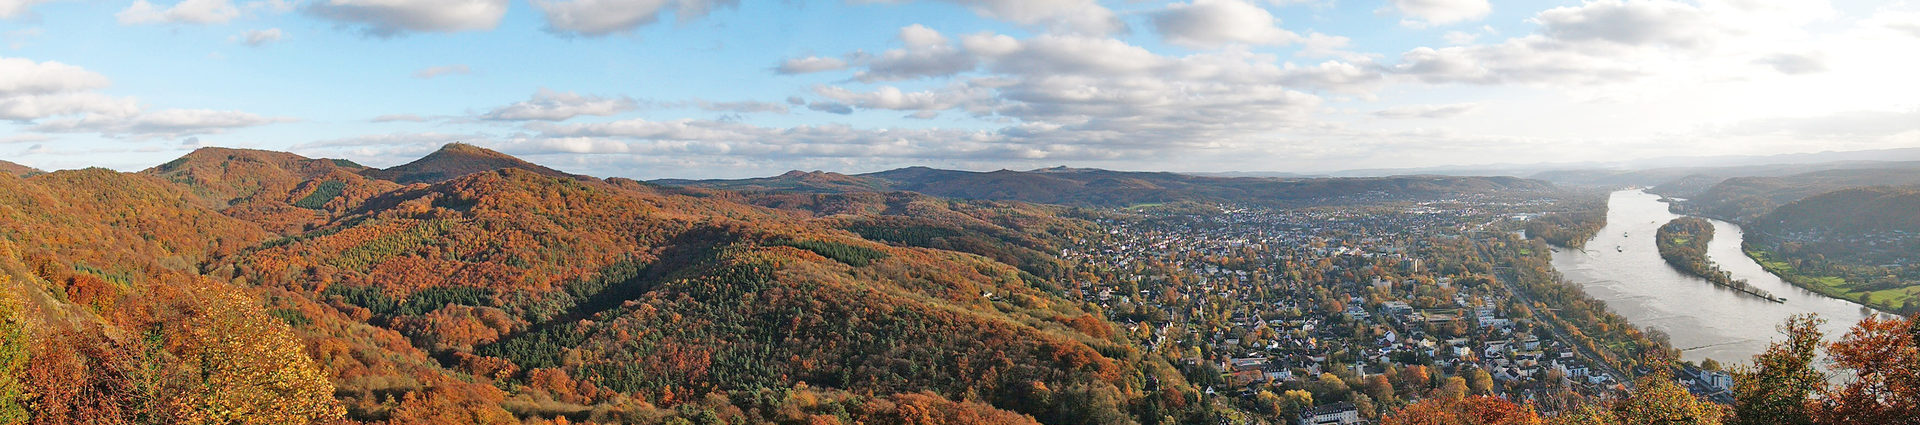 Luftansicht vom Siebengebirge mit Rhein